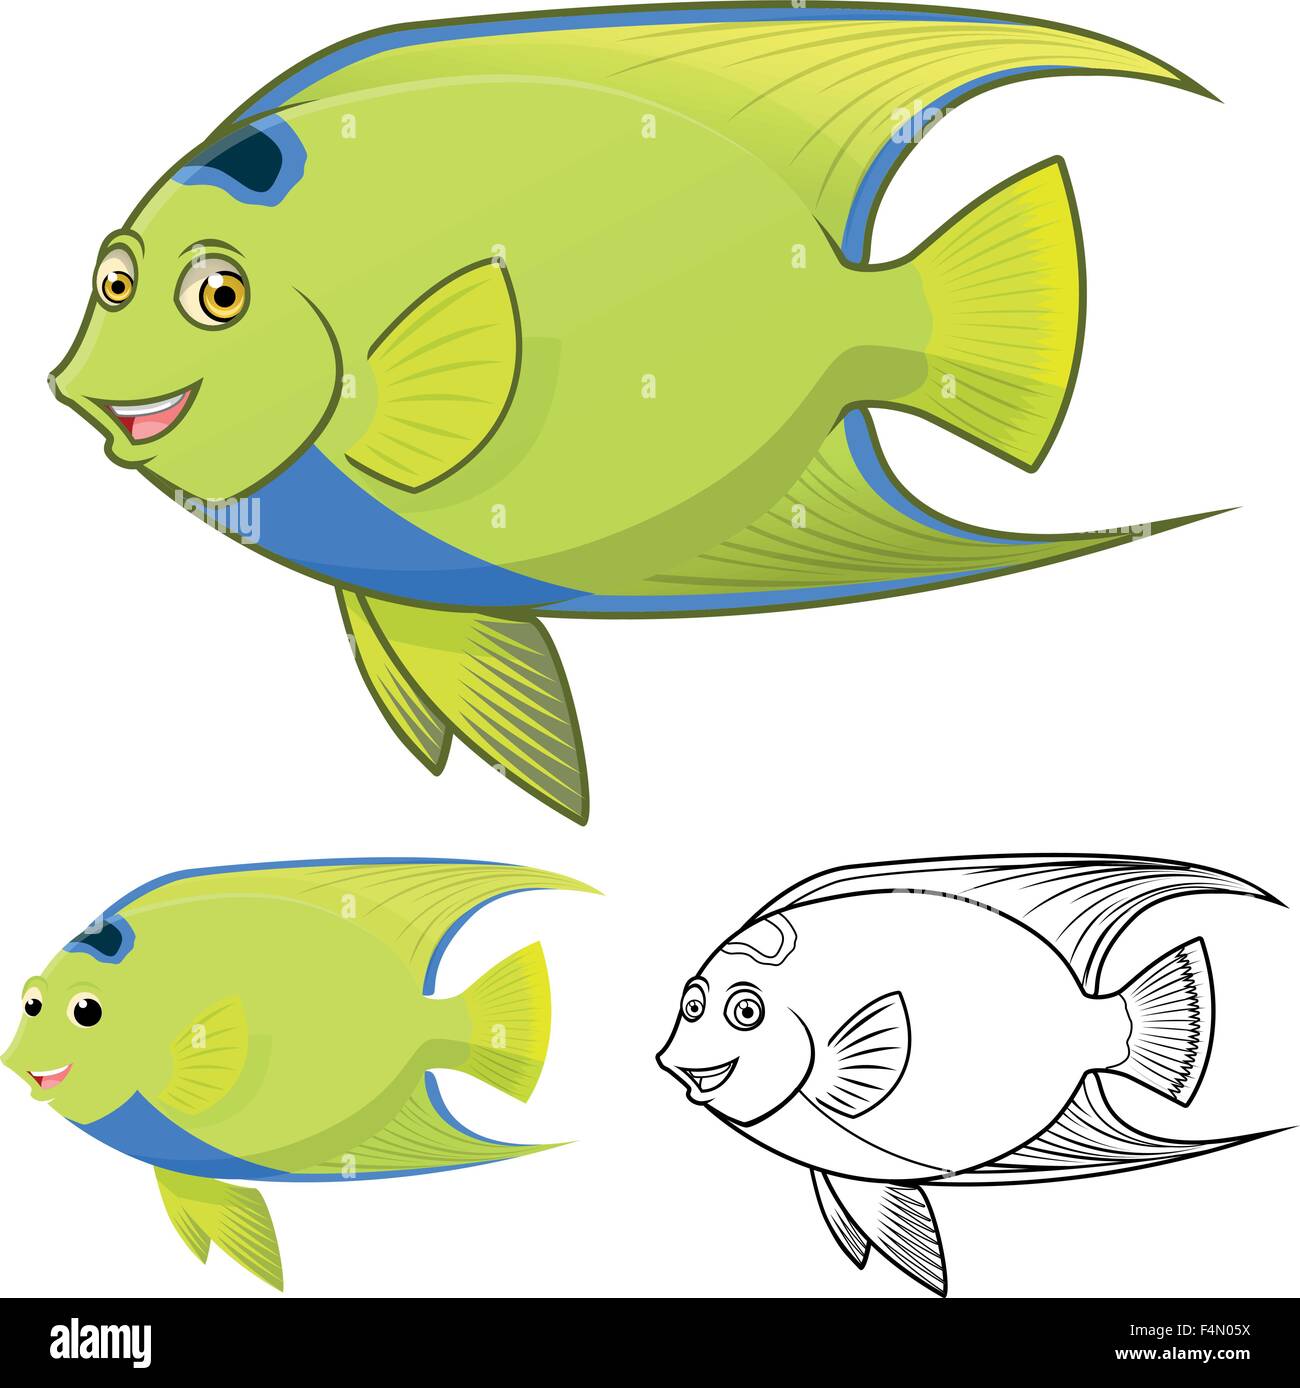 Hohe Qualität Queen Angel Fisch Cartoon Charakter gehören flache Bauweise und Linie Kunst Version Stock Vektor